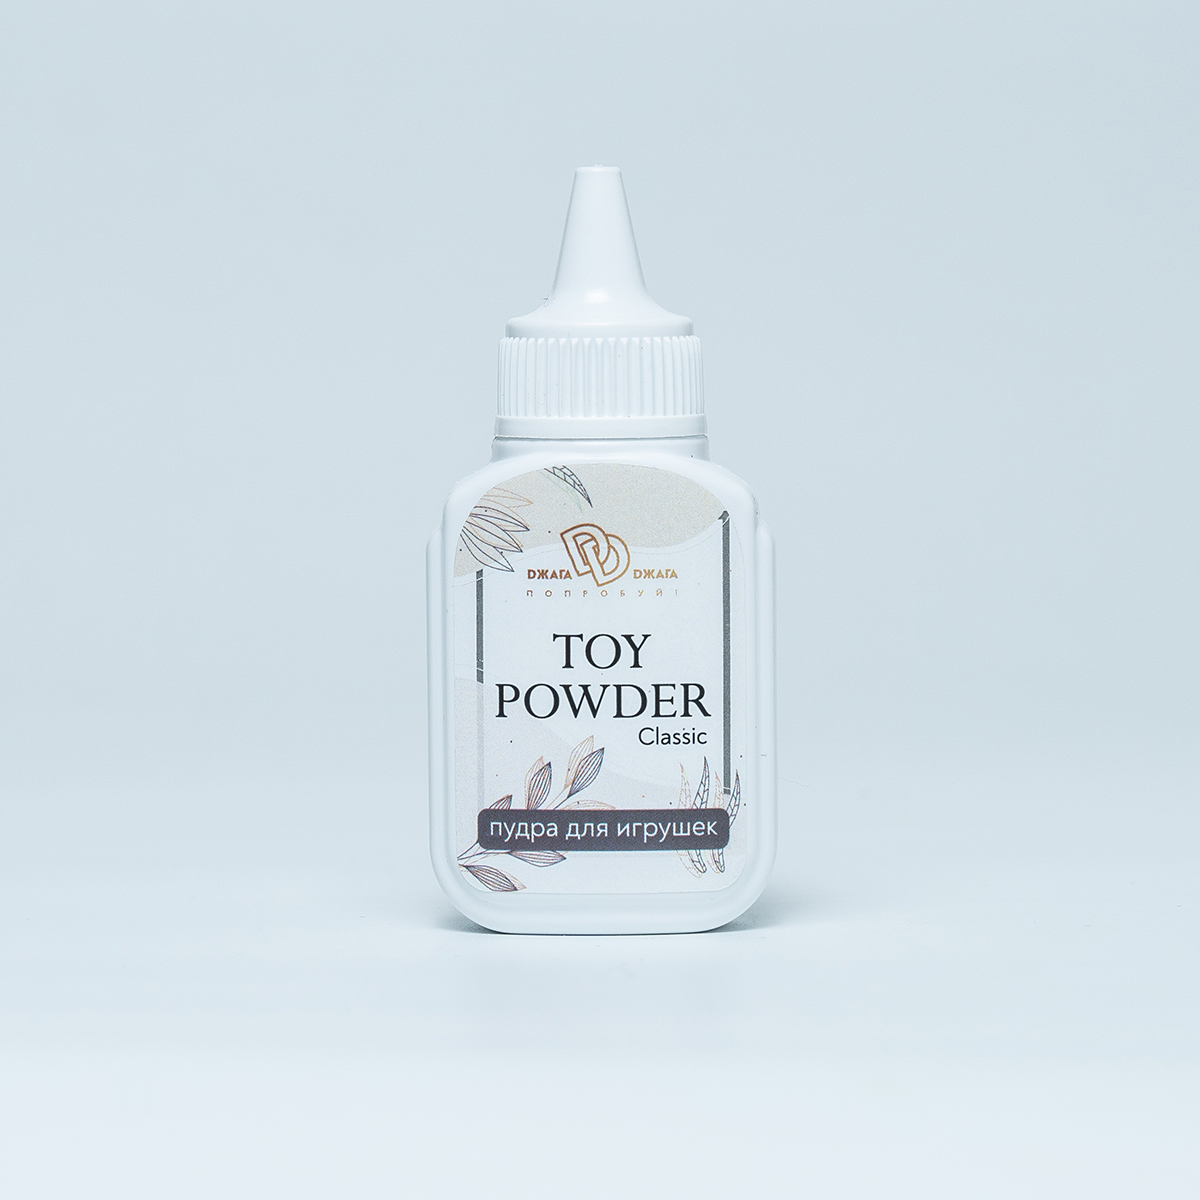 TOY POWDER Classic - Пудра для игрушек, 15 гр